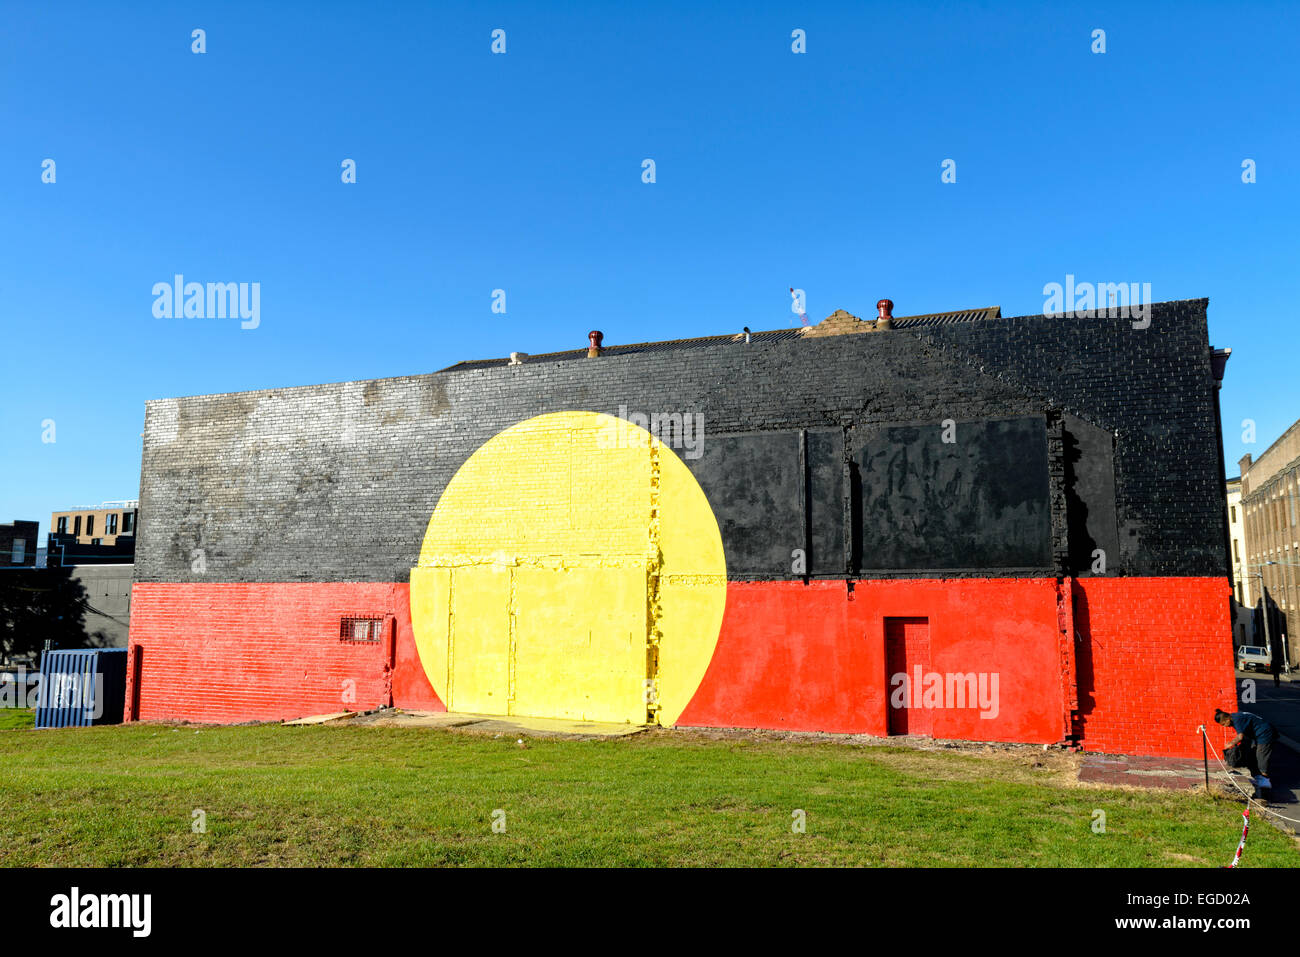 La célèbre fresque du drapeau aborigène qui marque "Le bloc" à Redfern, Sydney, une région connue pour sa communauté de peuples autochtones. Ville du pavillon autochtone Banque D'Images